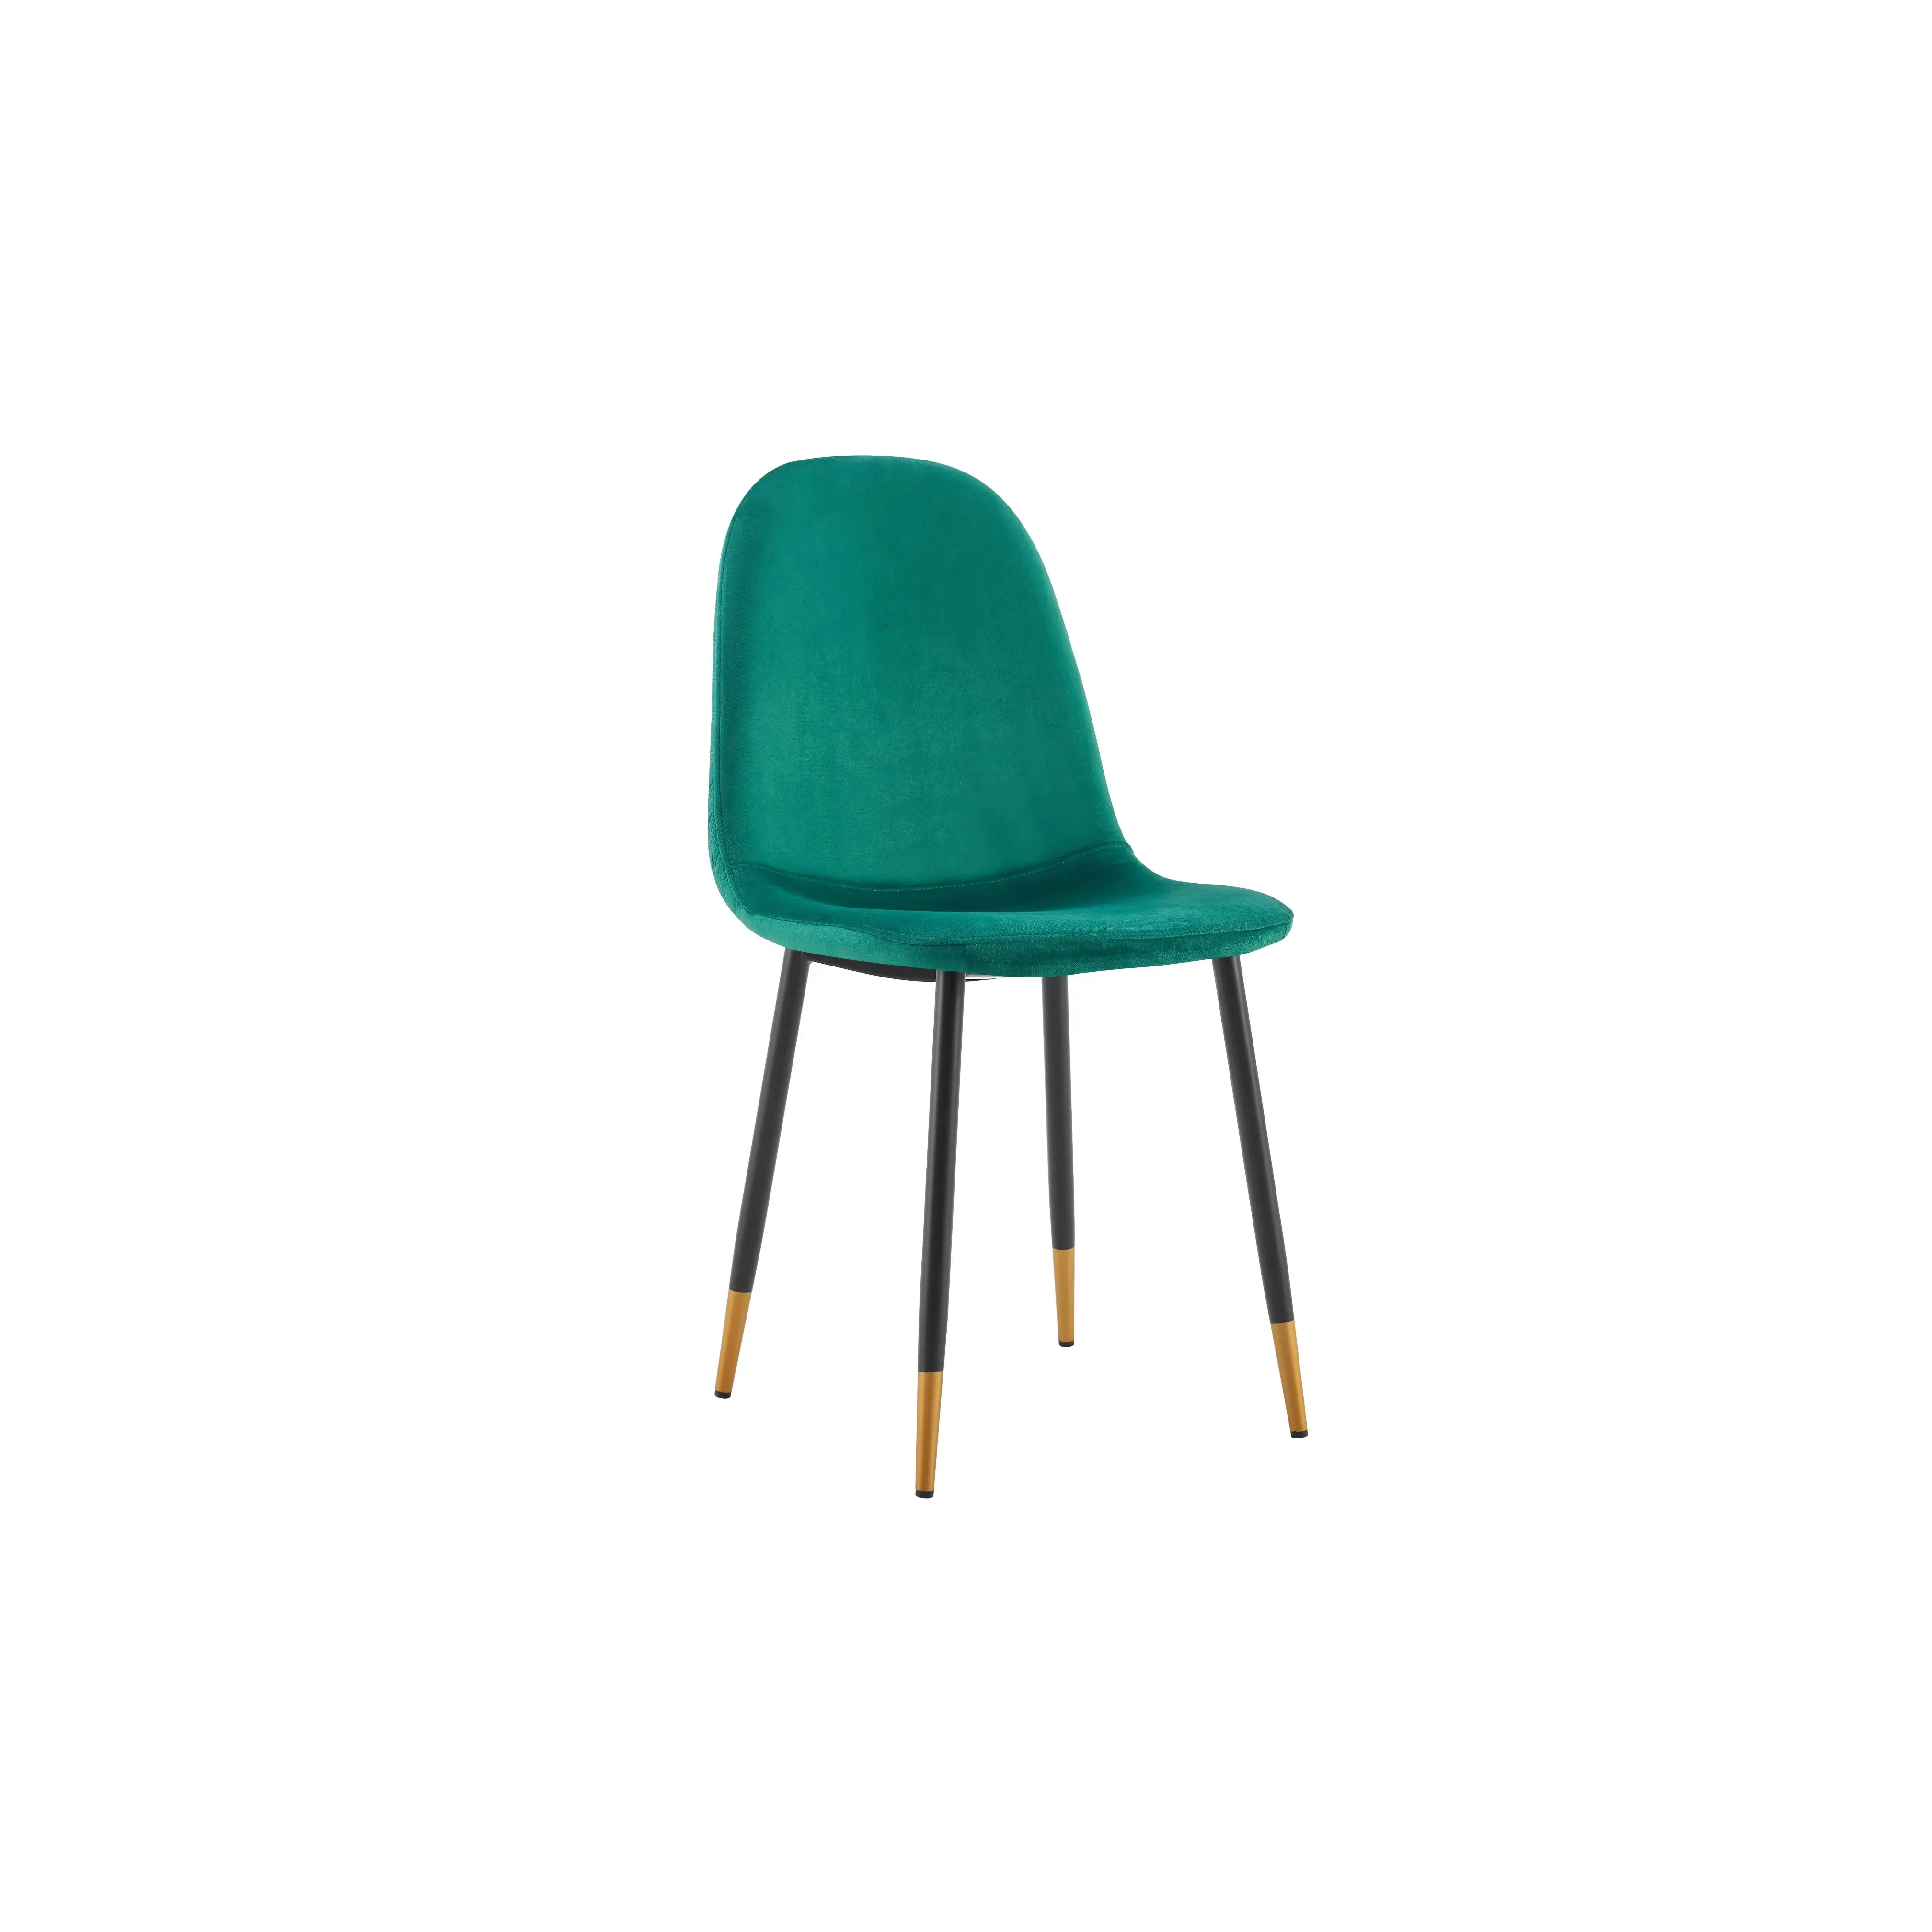 Katlanabilir akrilik Metal Modern şeffaf yemek sandalyesi istikrarlı katlanır sandalye koyu kahverengi Pc yemek odası sandalyesi